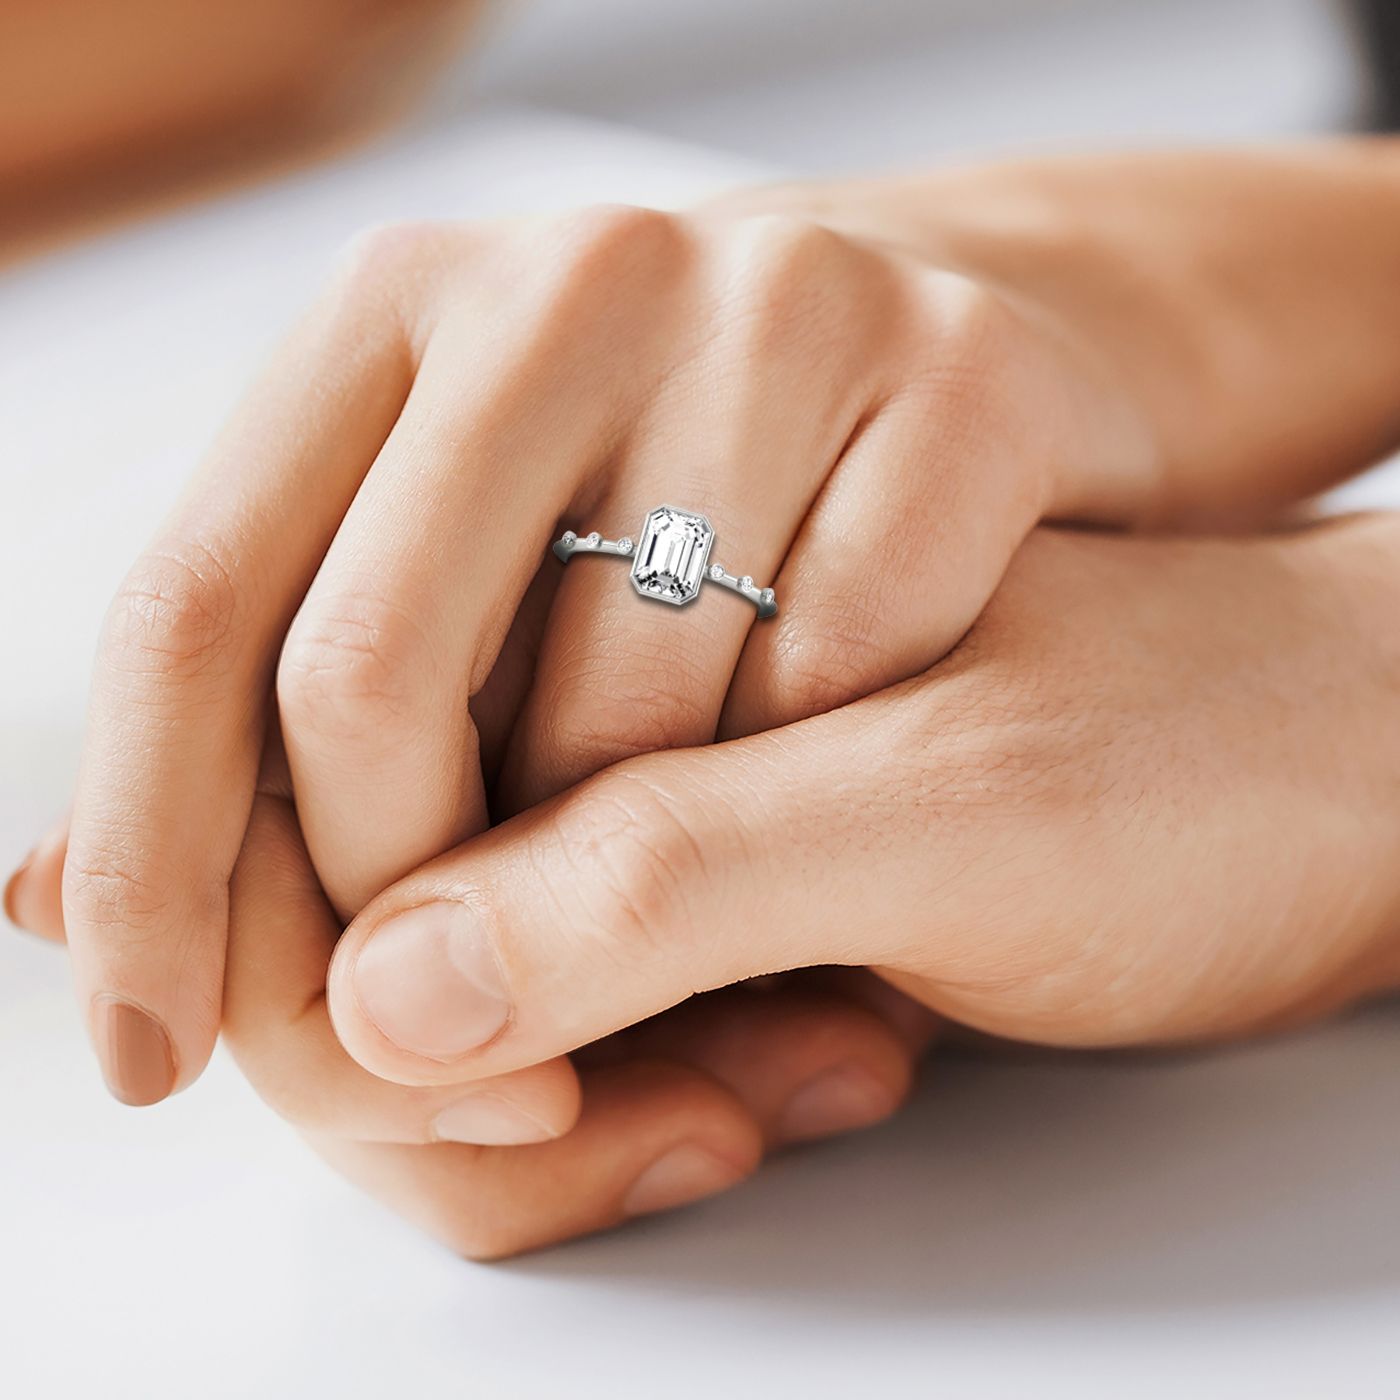 Plat Bezel Set Emerald Engagement Ring With 6 Bezel Set Round Diamonds On Shank